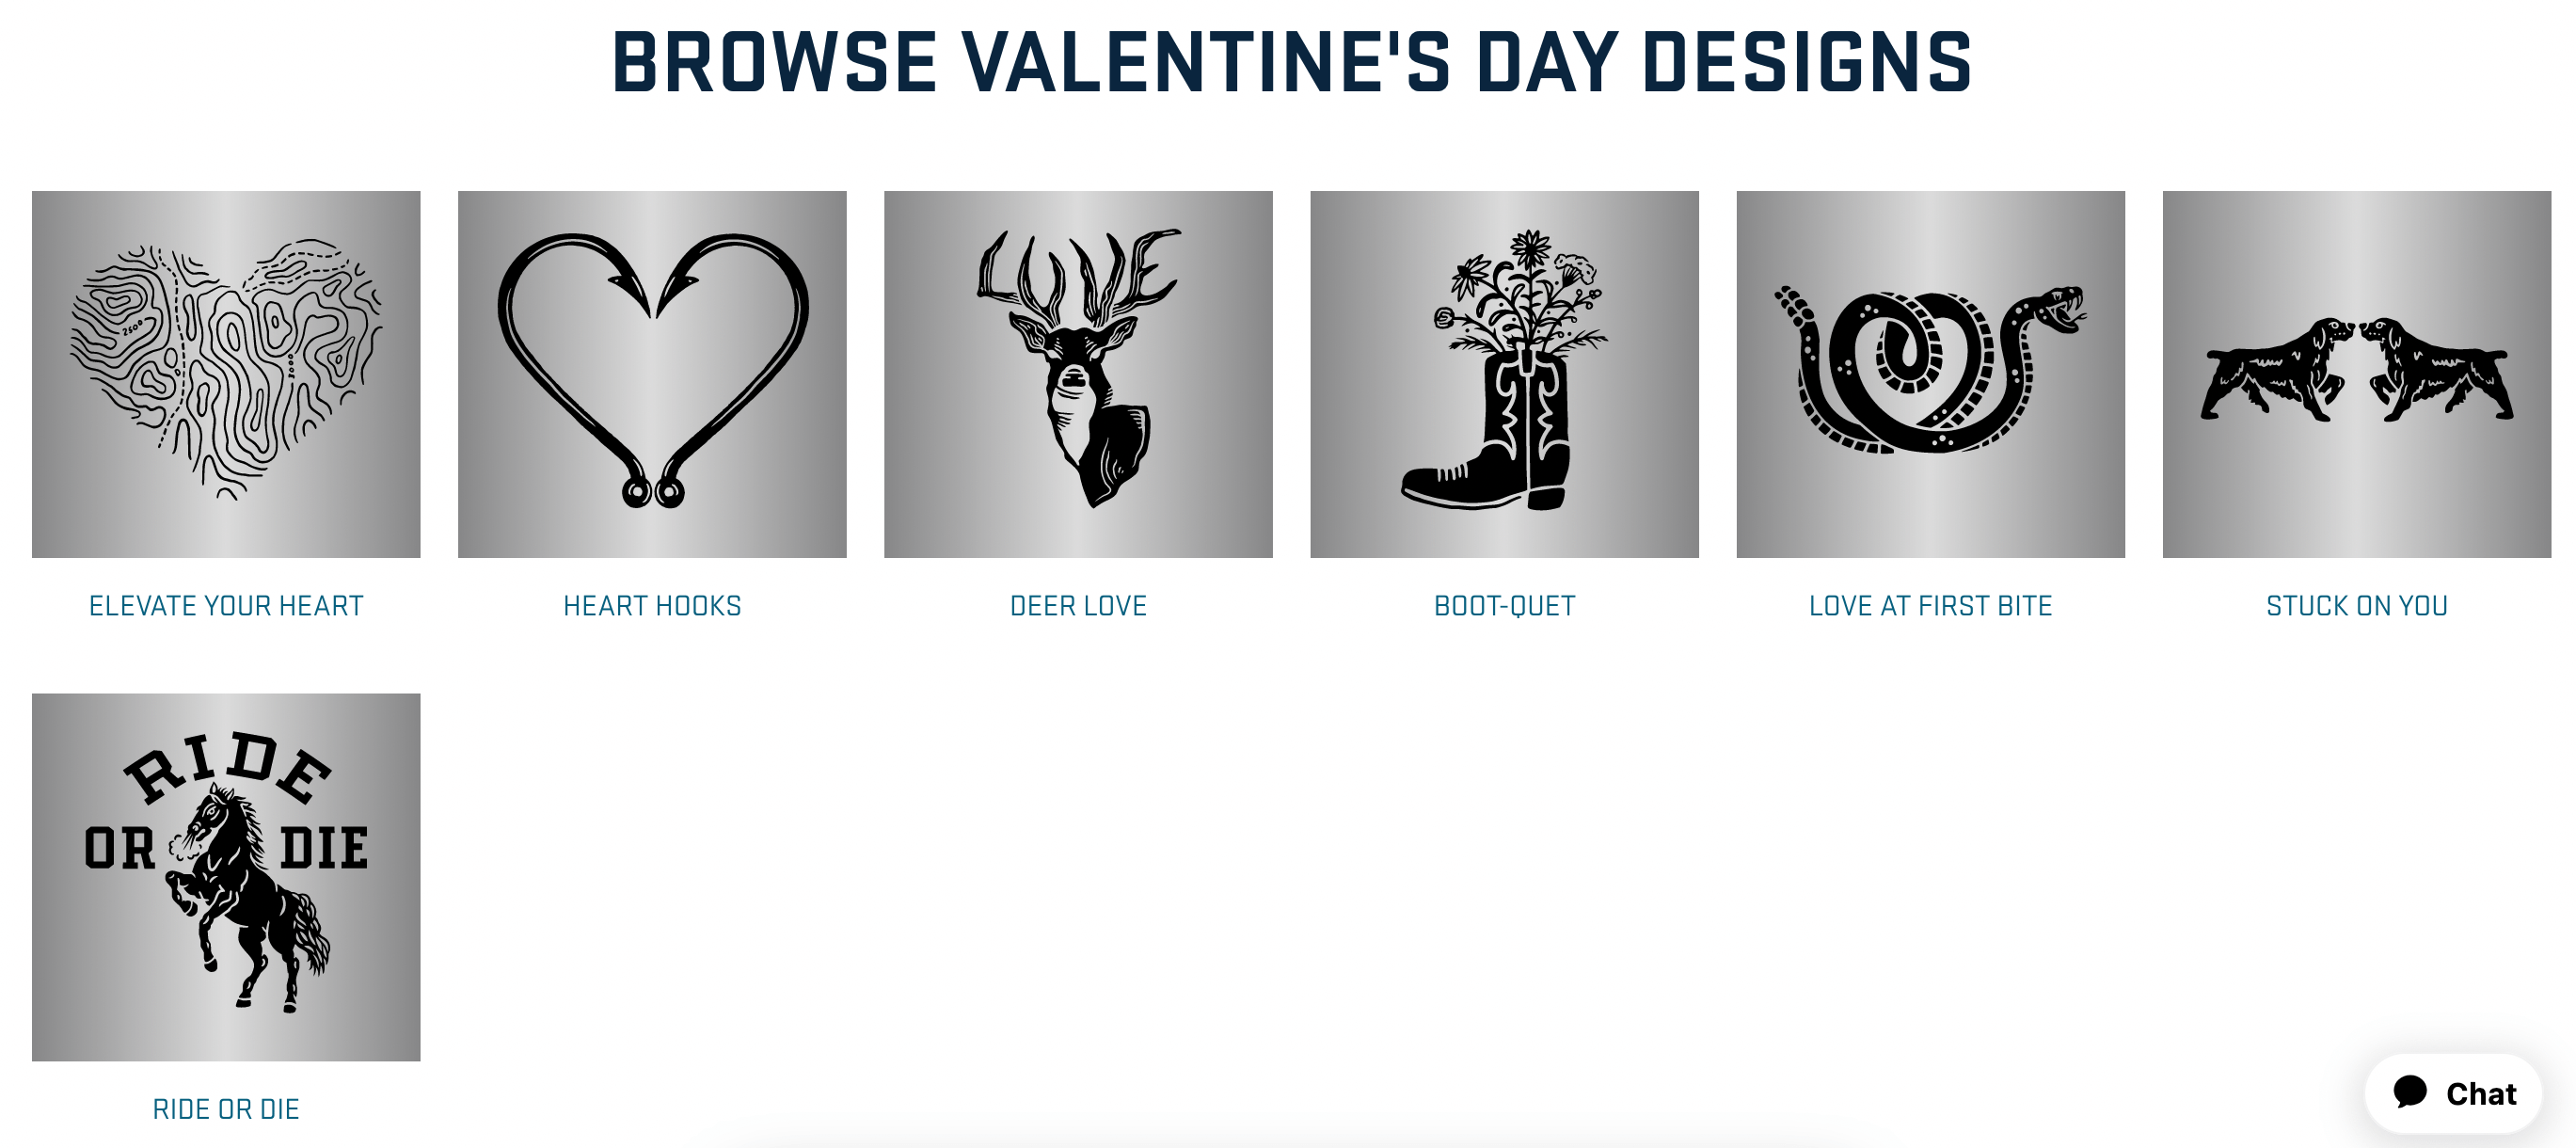 Yeti Valentine’s Day designs